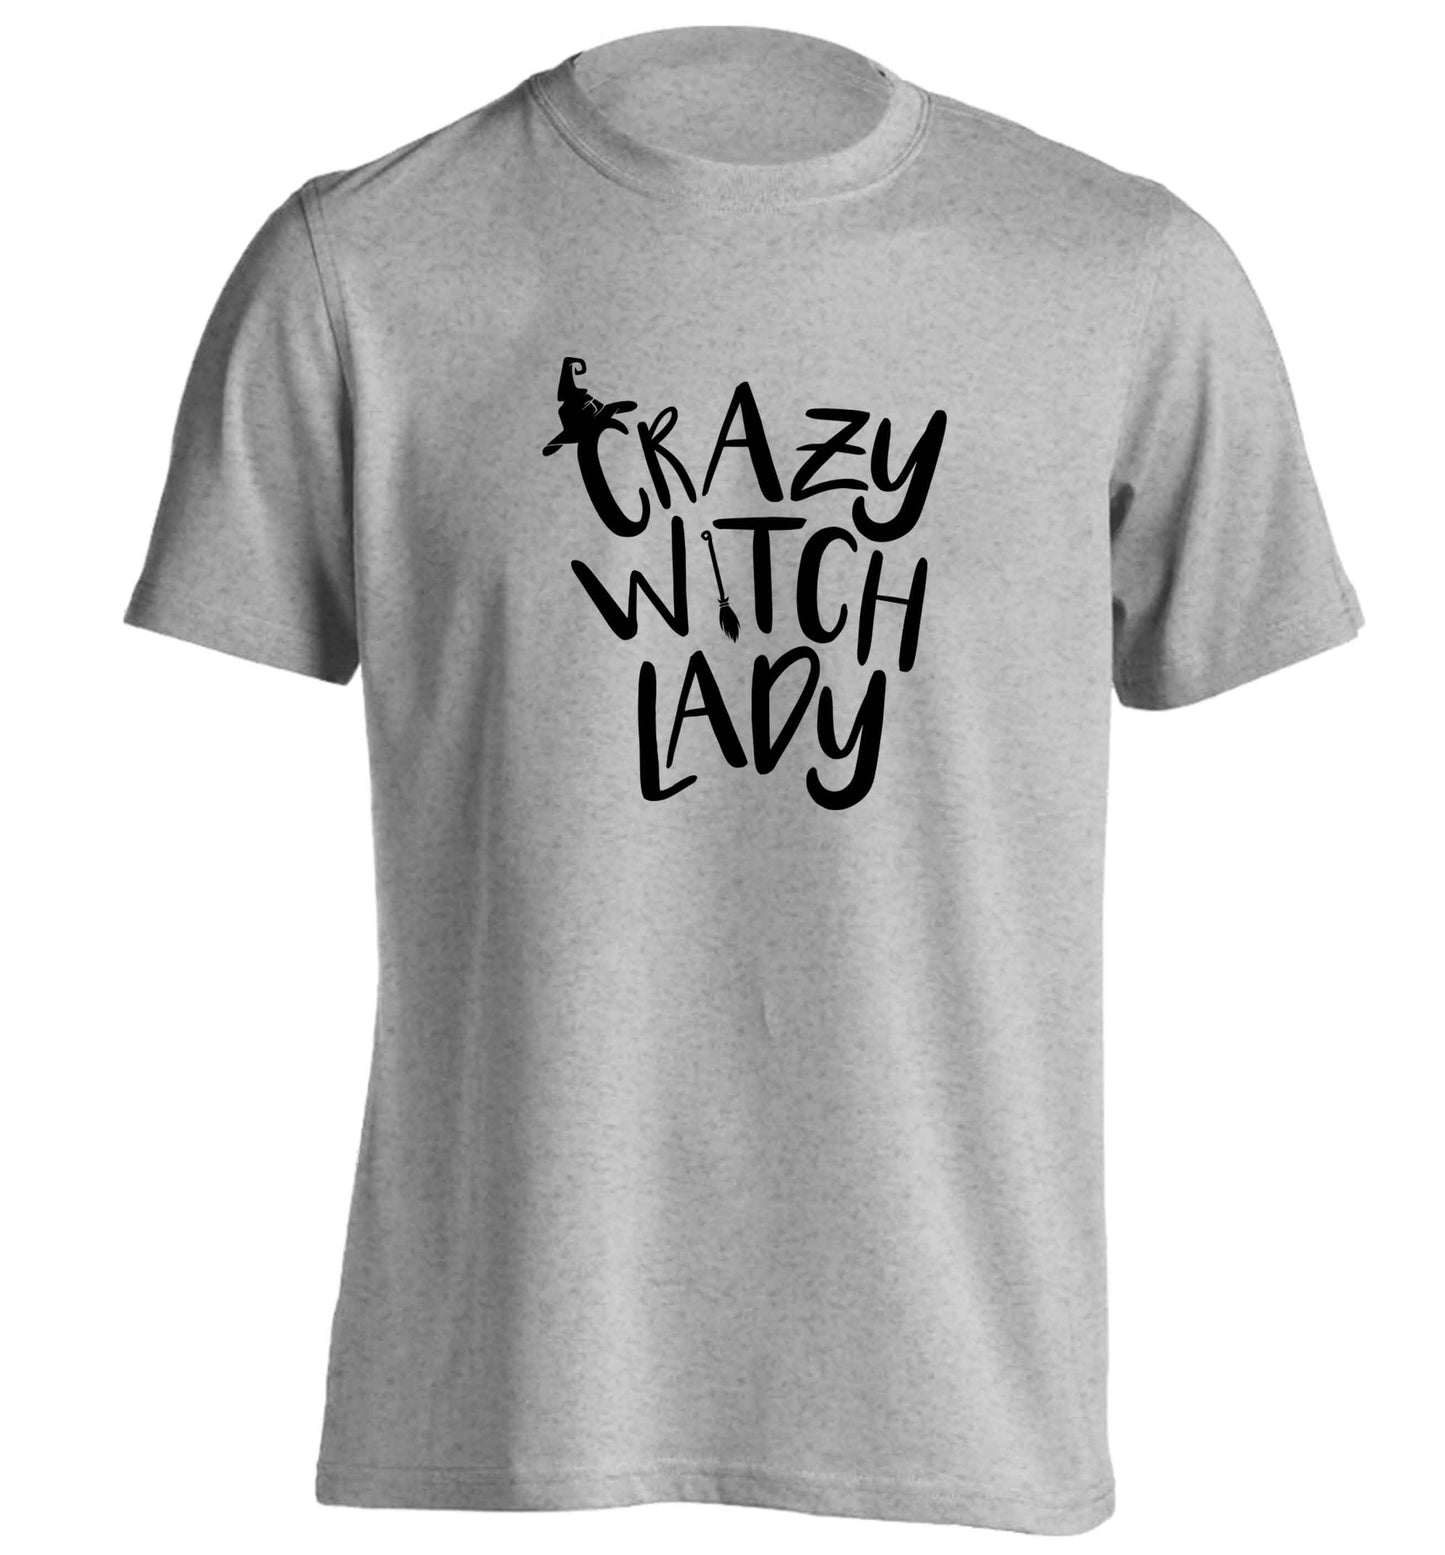 Crazy witch lady adults unisex grey Tshirt 2XL